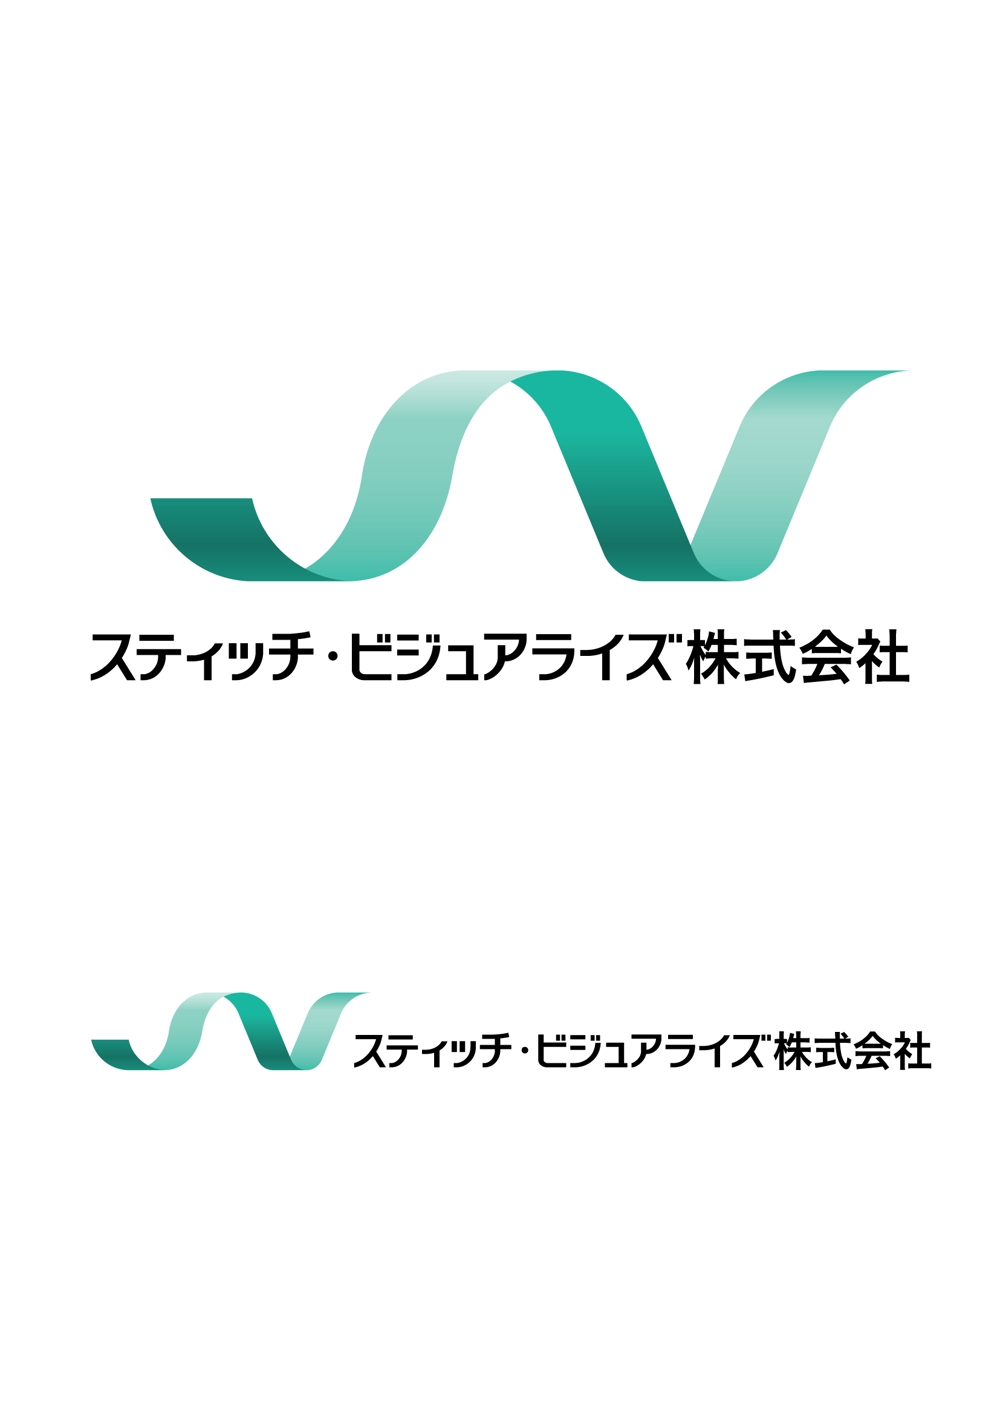 Webコンサル会社のロゴ